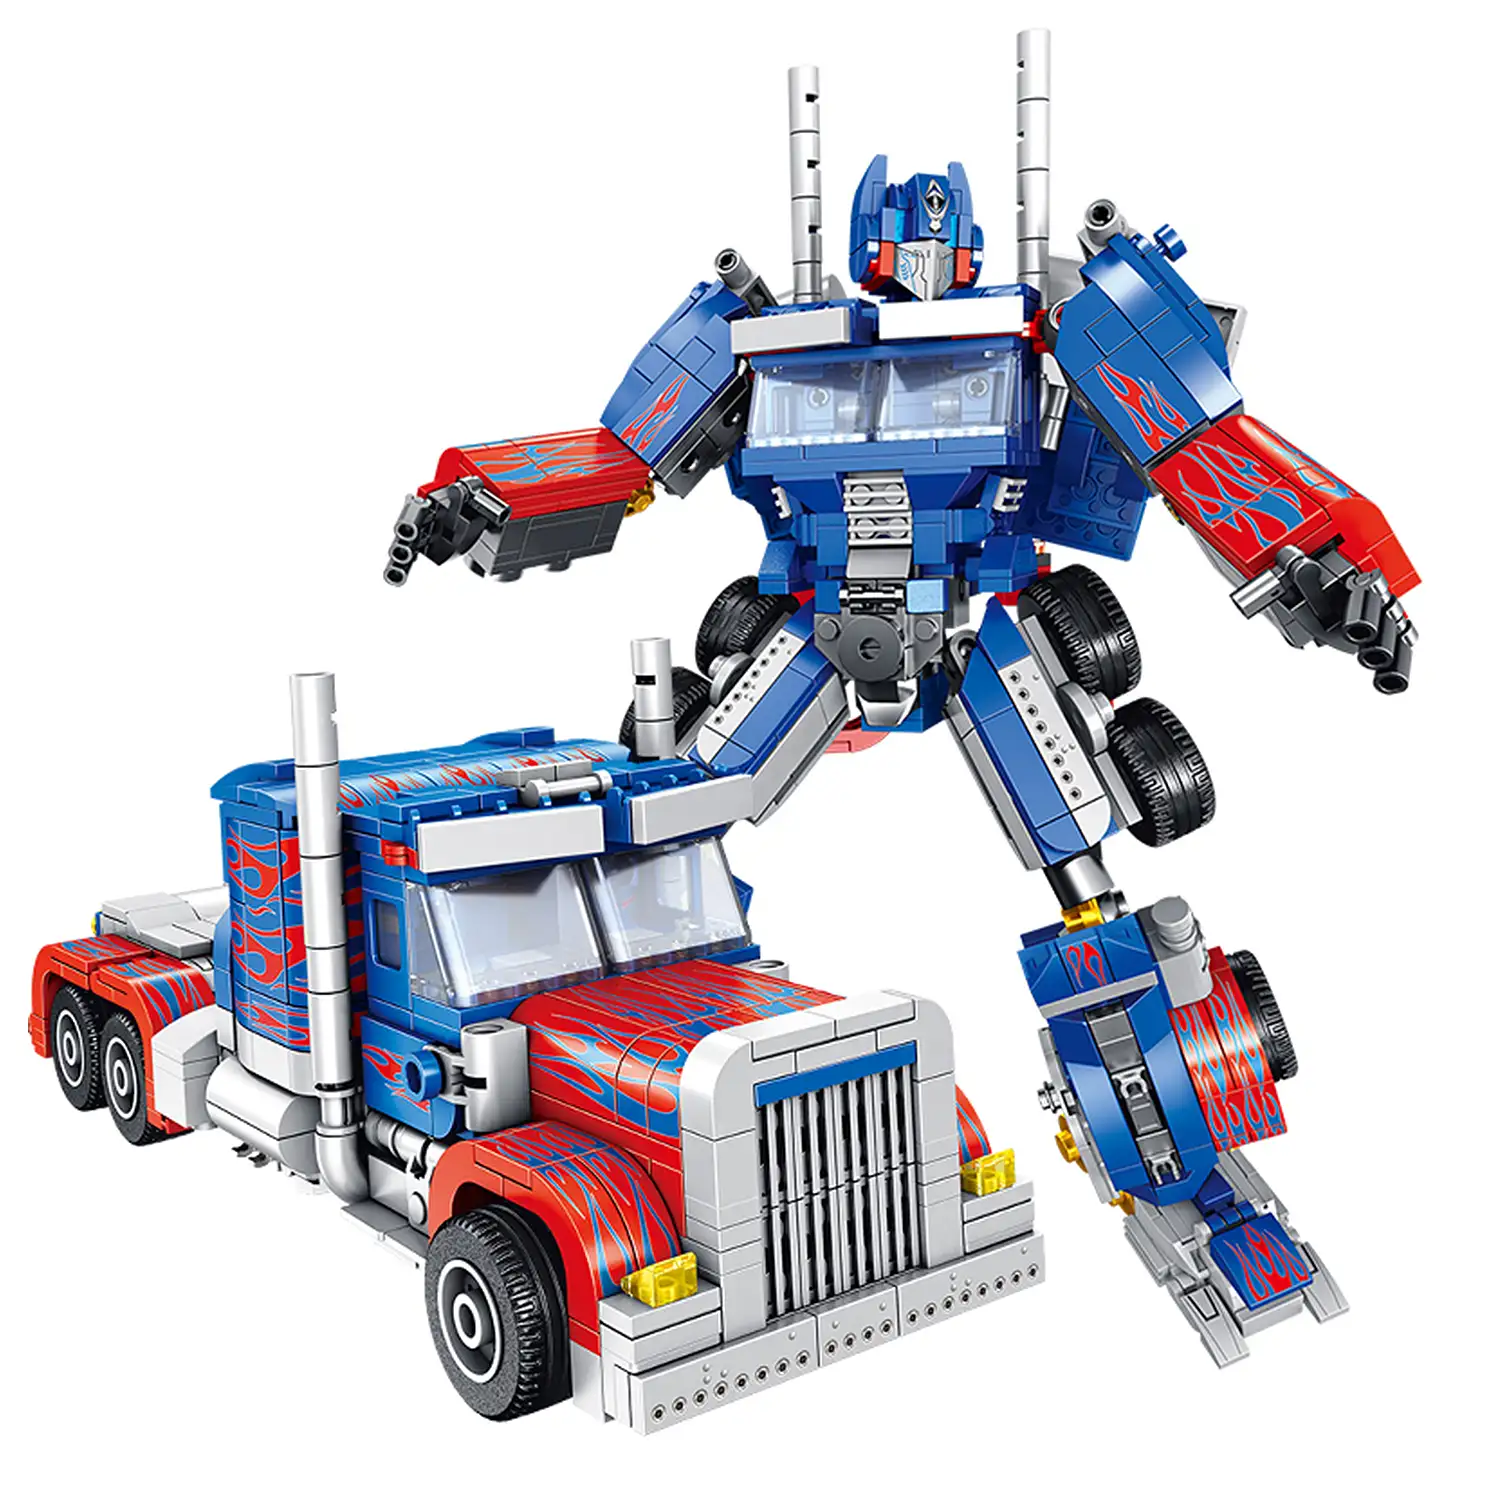 Robot convertible en camión, 833 piezas. Podrás construir otros 6 modelos de vehículos y robots.